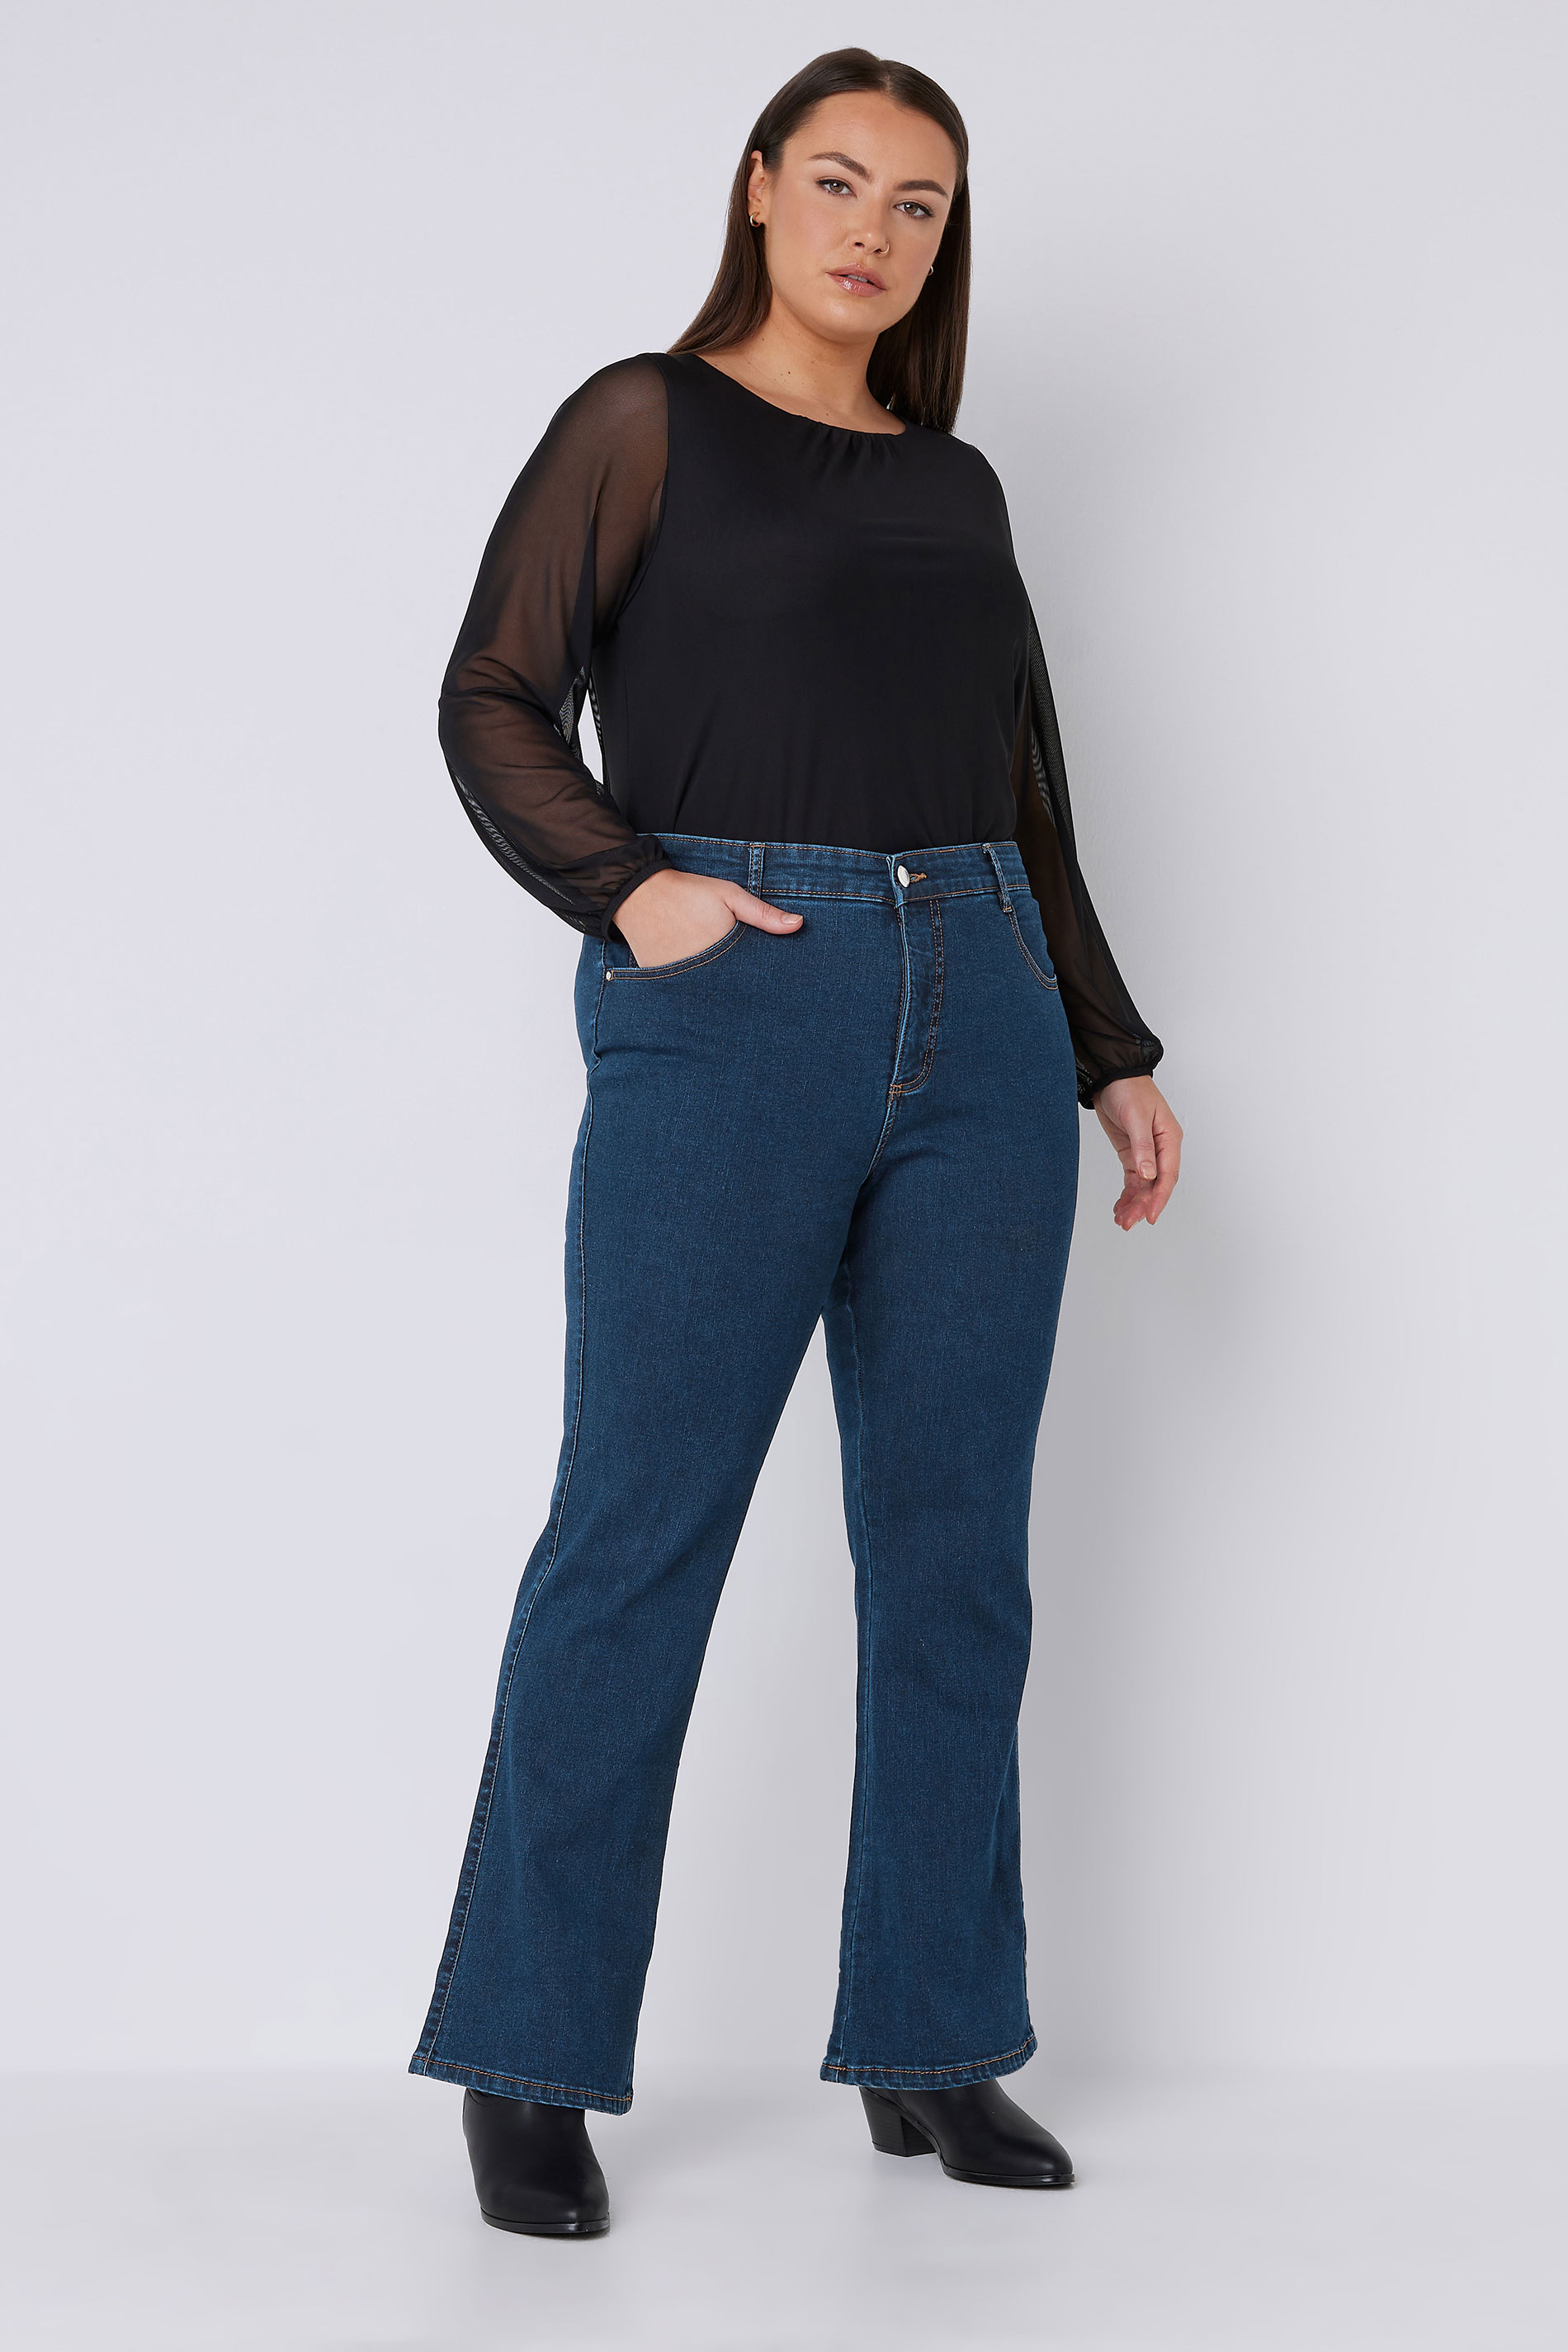 EVANS Plus Size Fit Indigo Bootcut Jeans